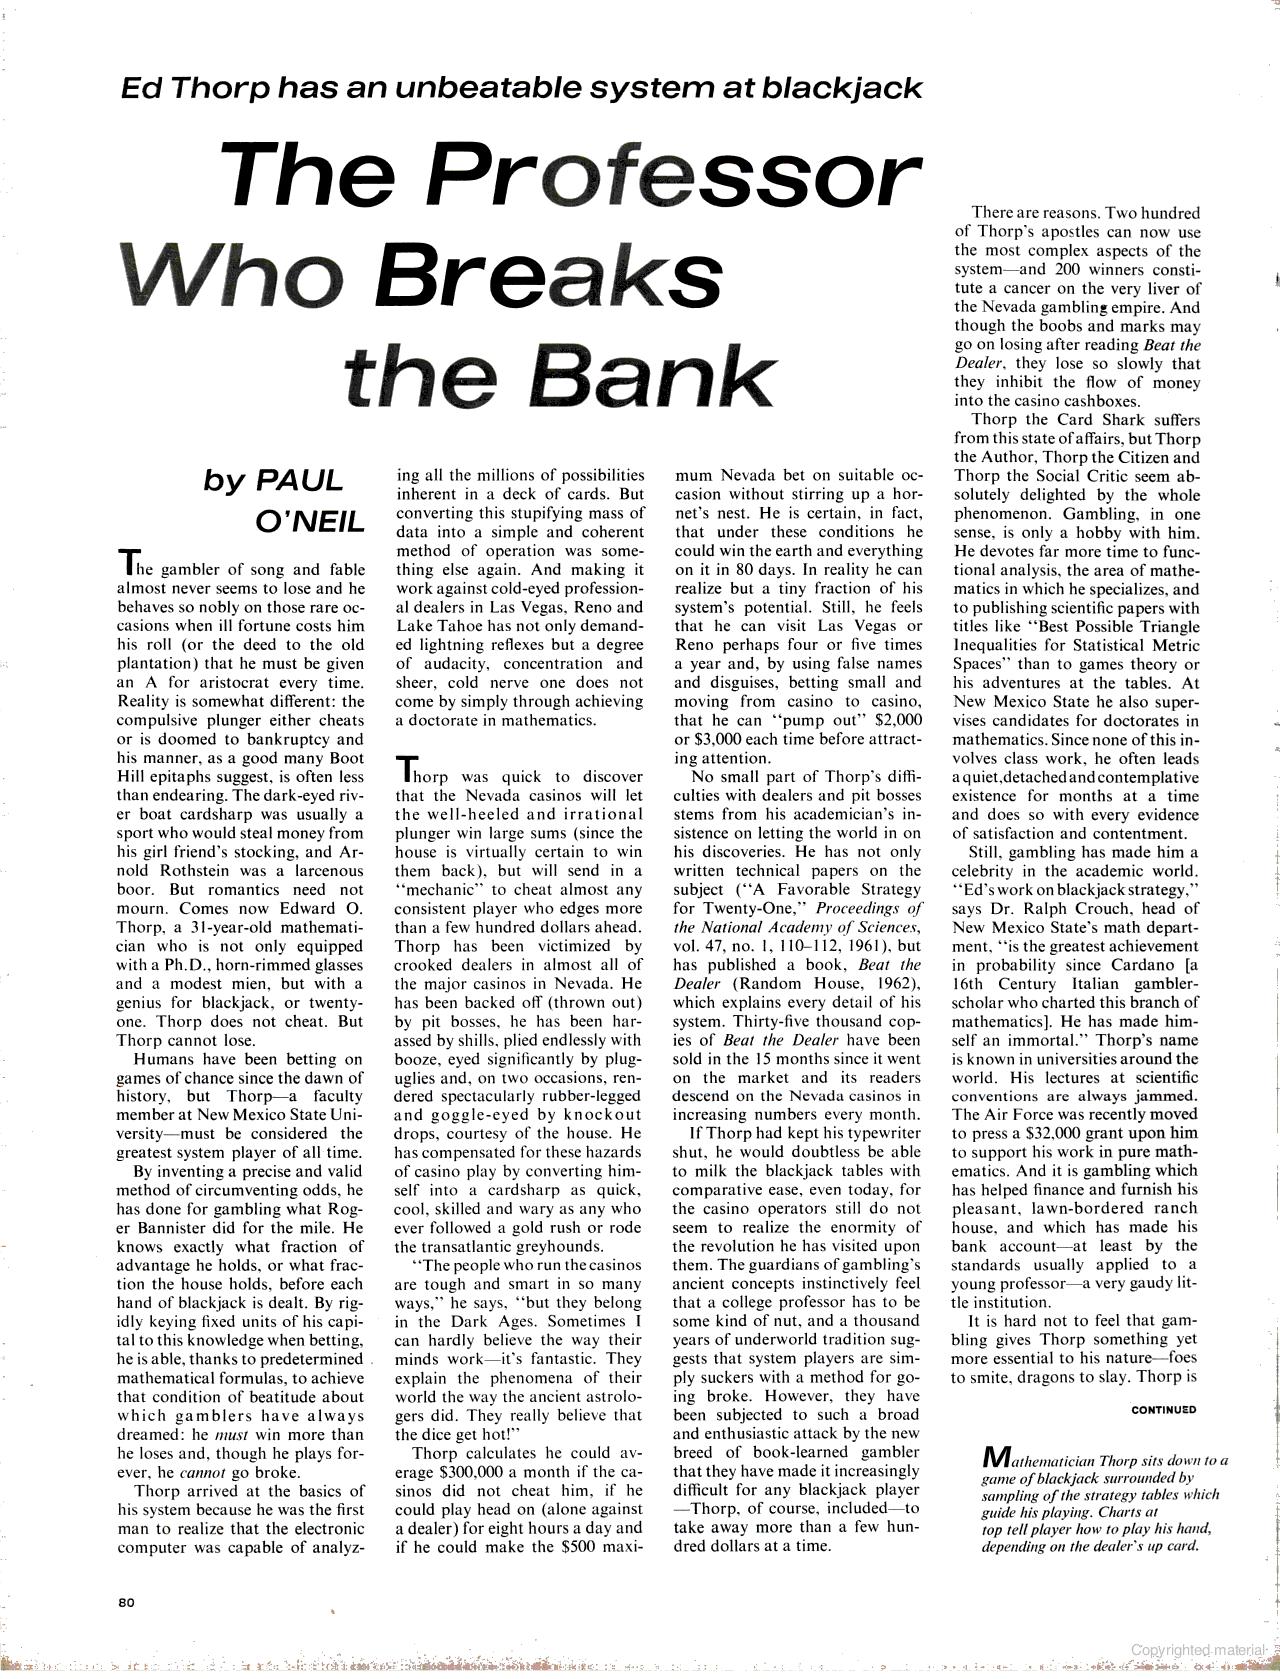 Ed Thorp And Blackjack: Life Magazine 1964 | Mike Cane’s xBlog1280 x 1679